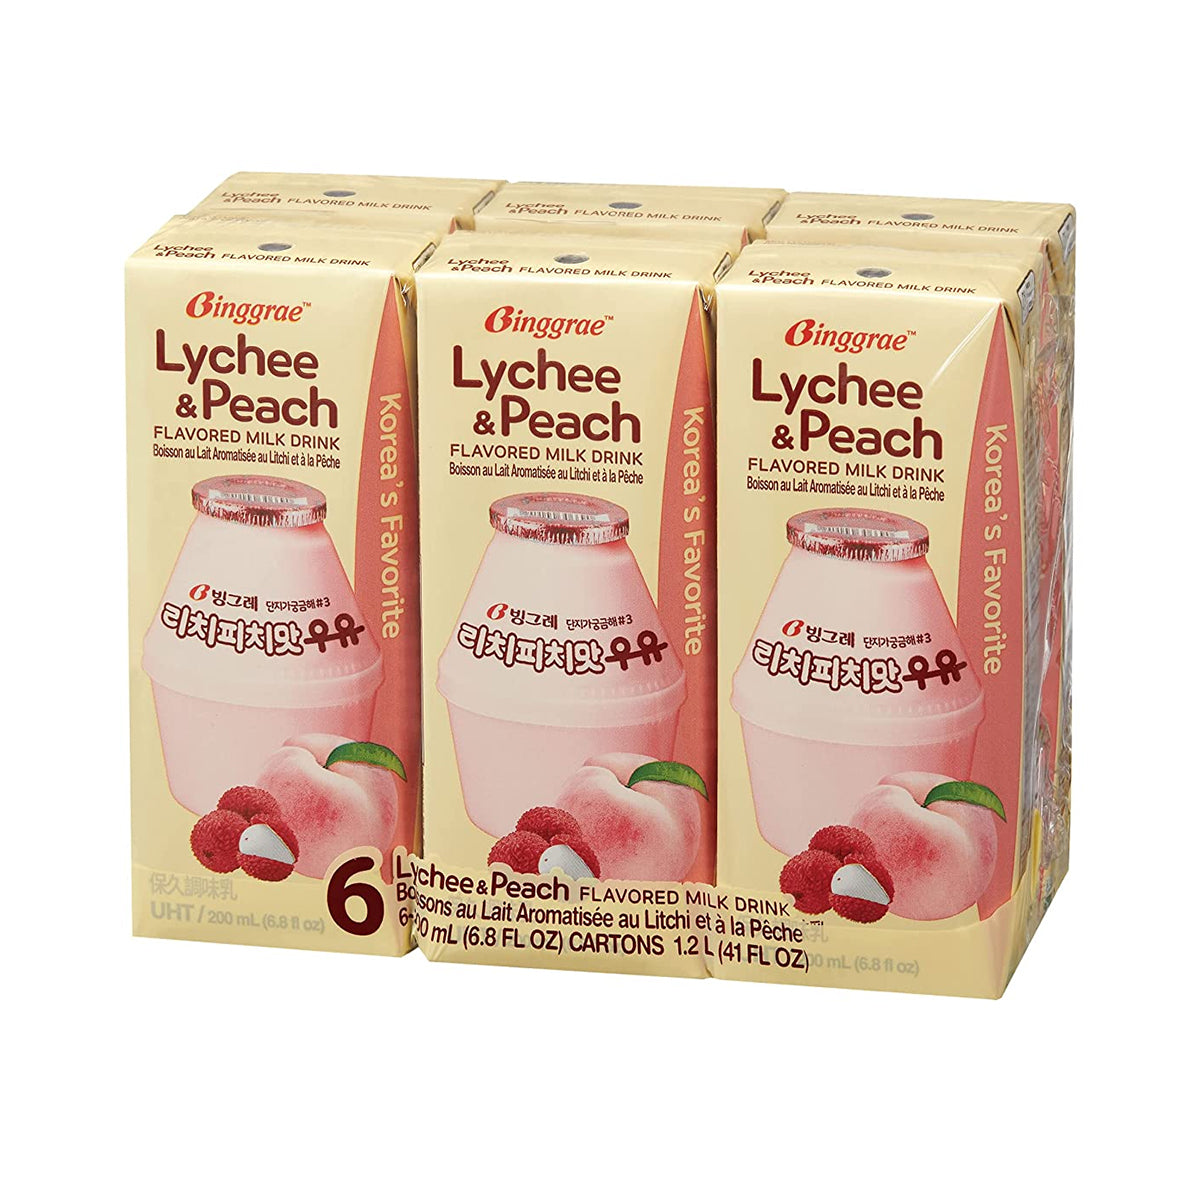 binggrae lychee peach flavored milk drink - 6pk 200ml